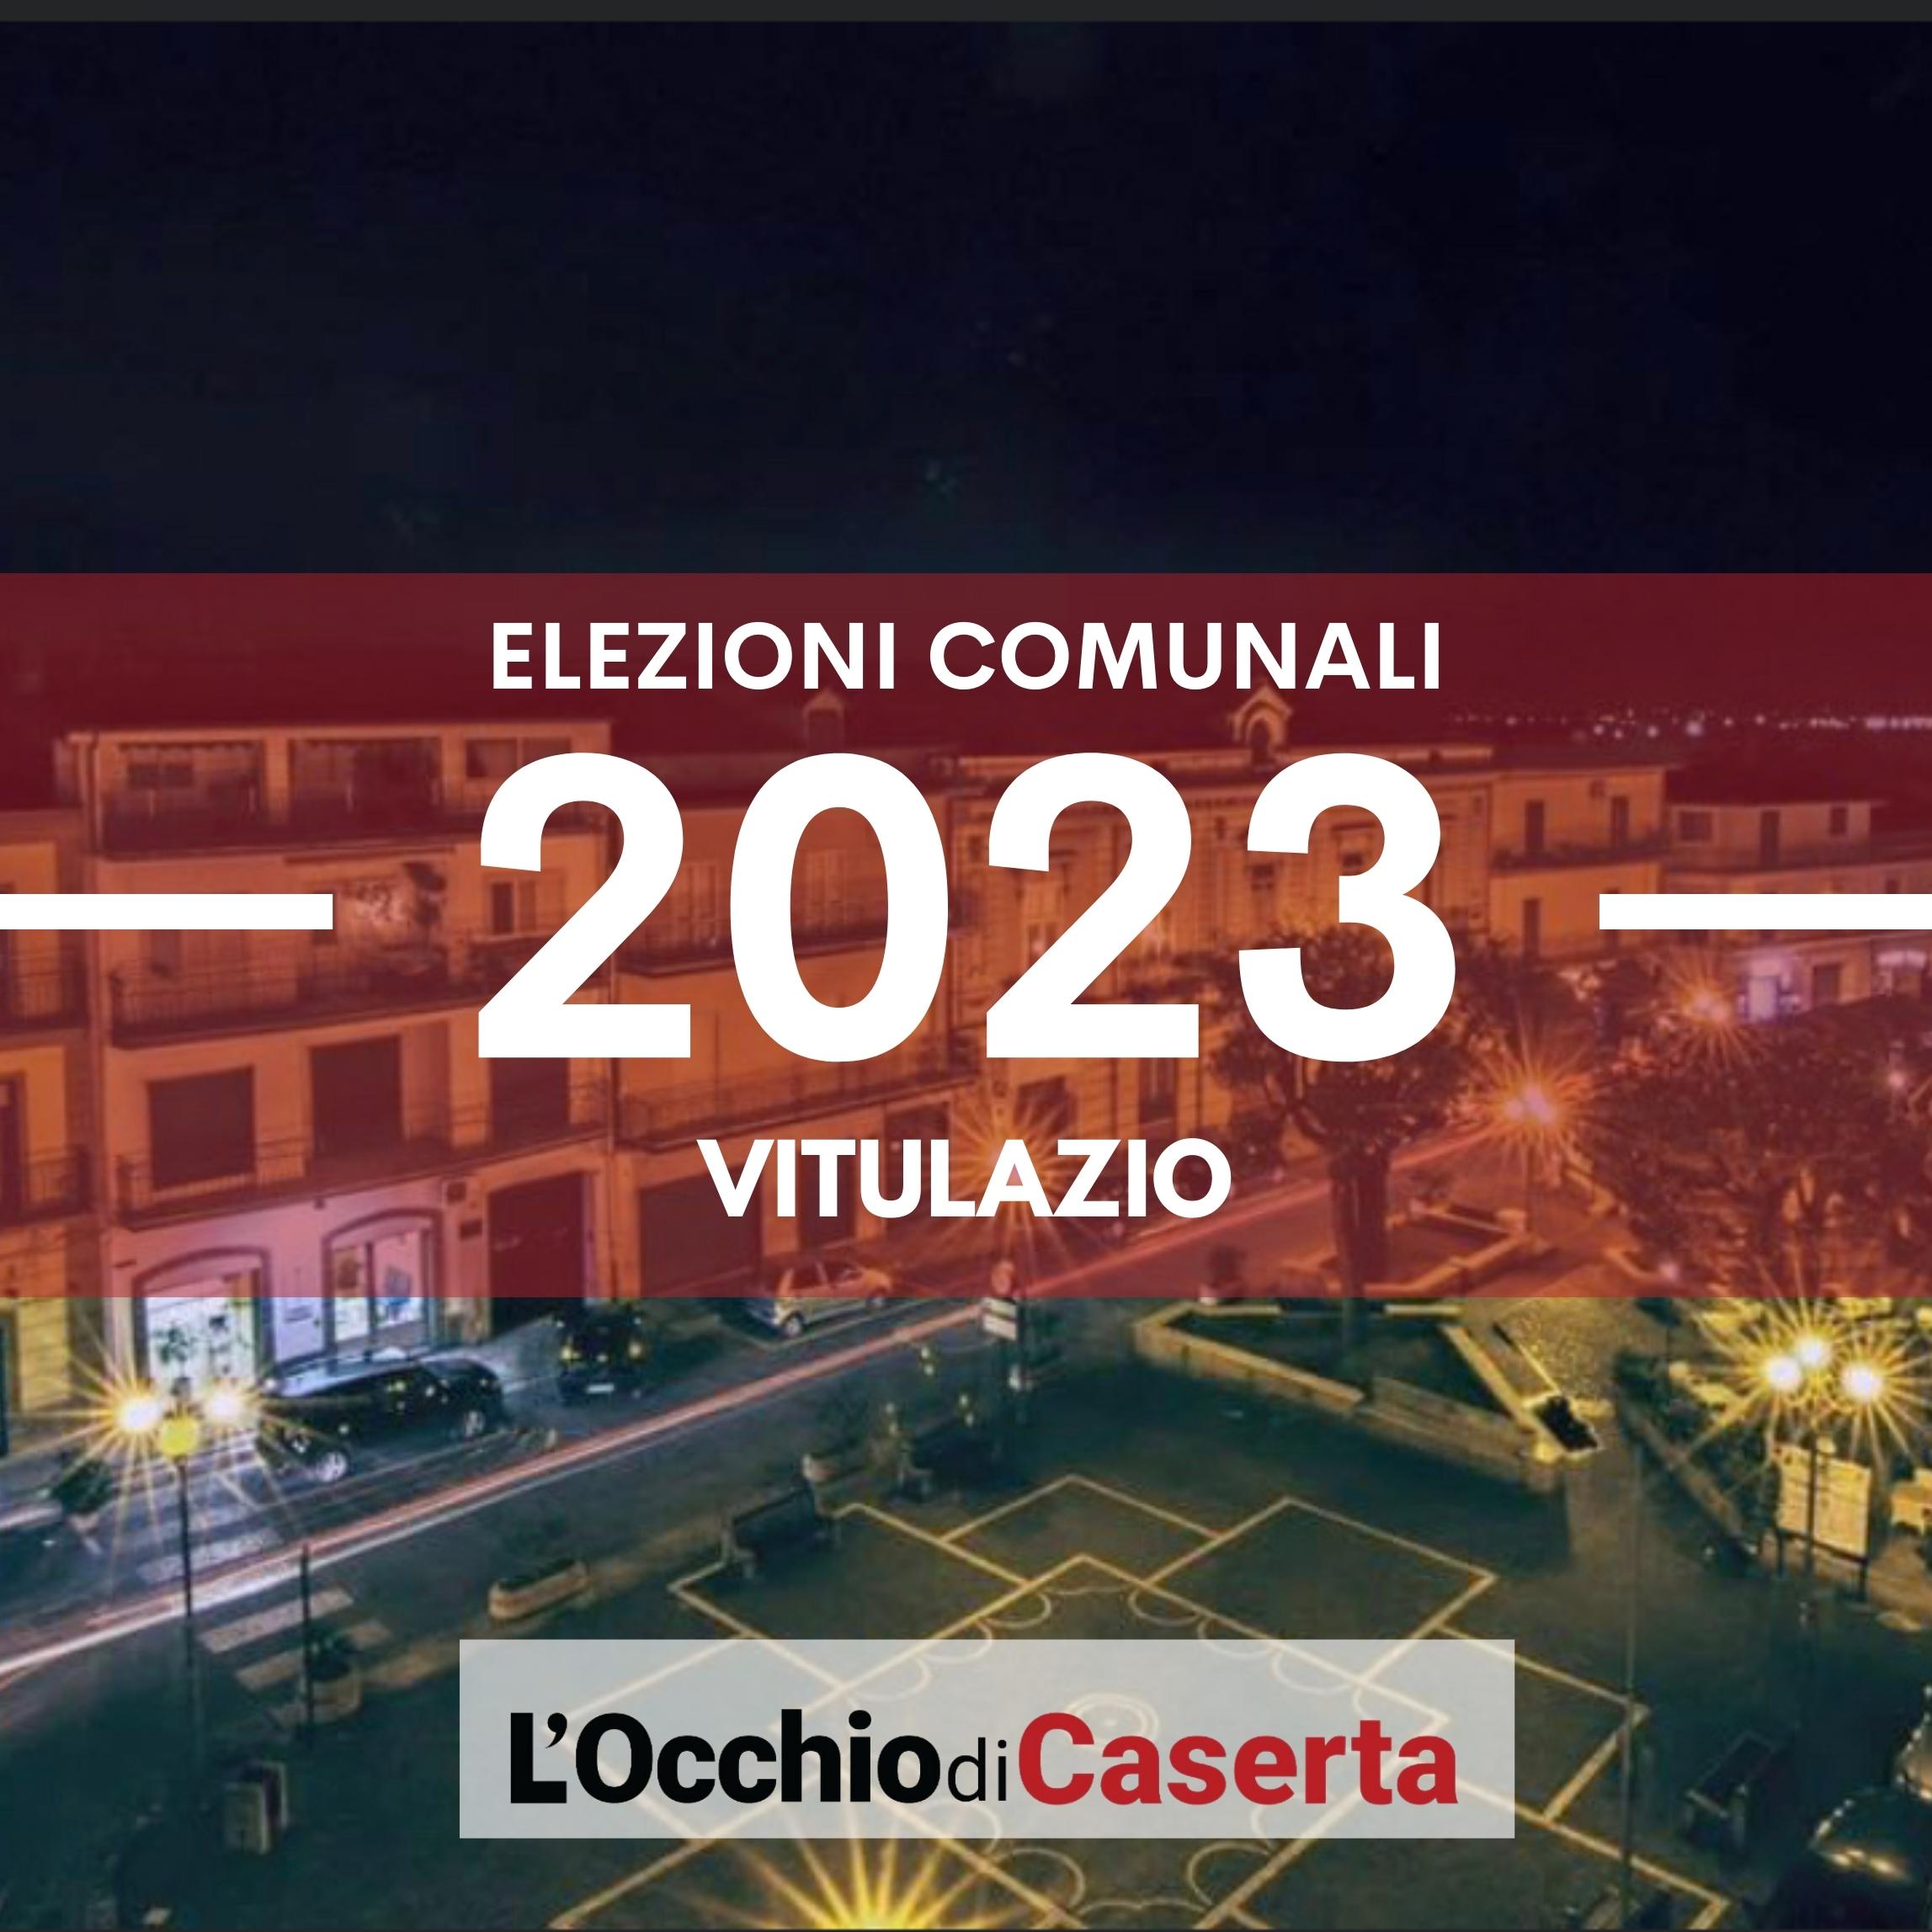 Elezioni comunali 2023 Vitulazio liste candidati